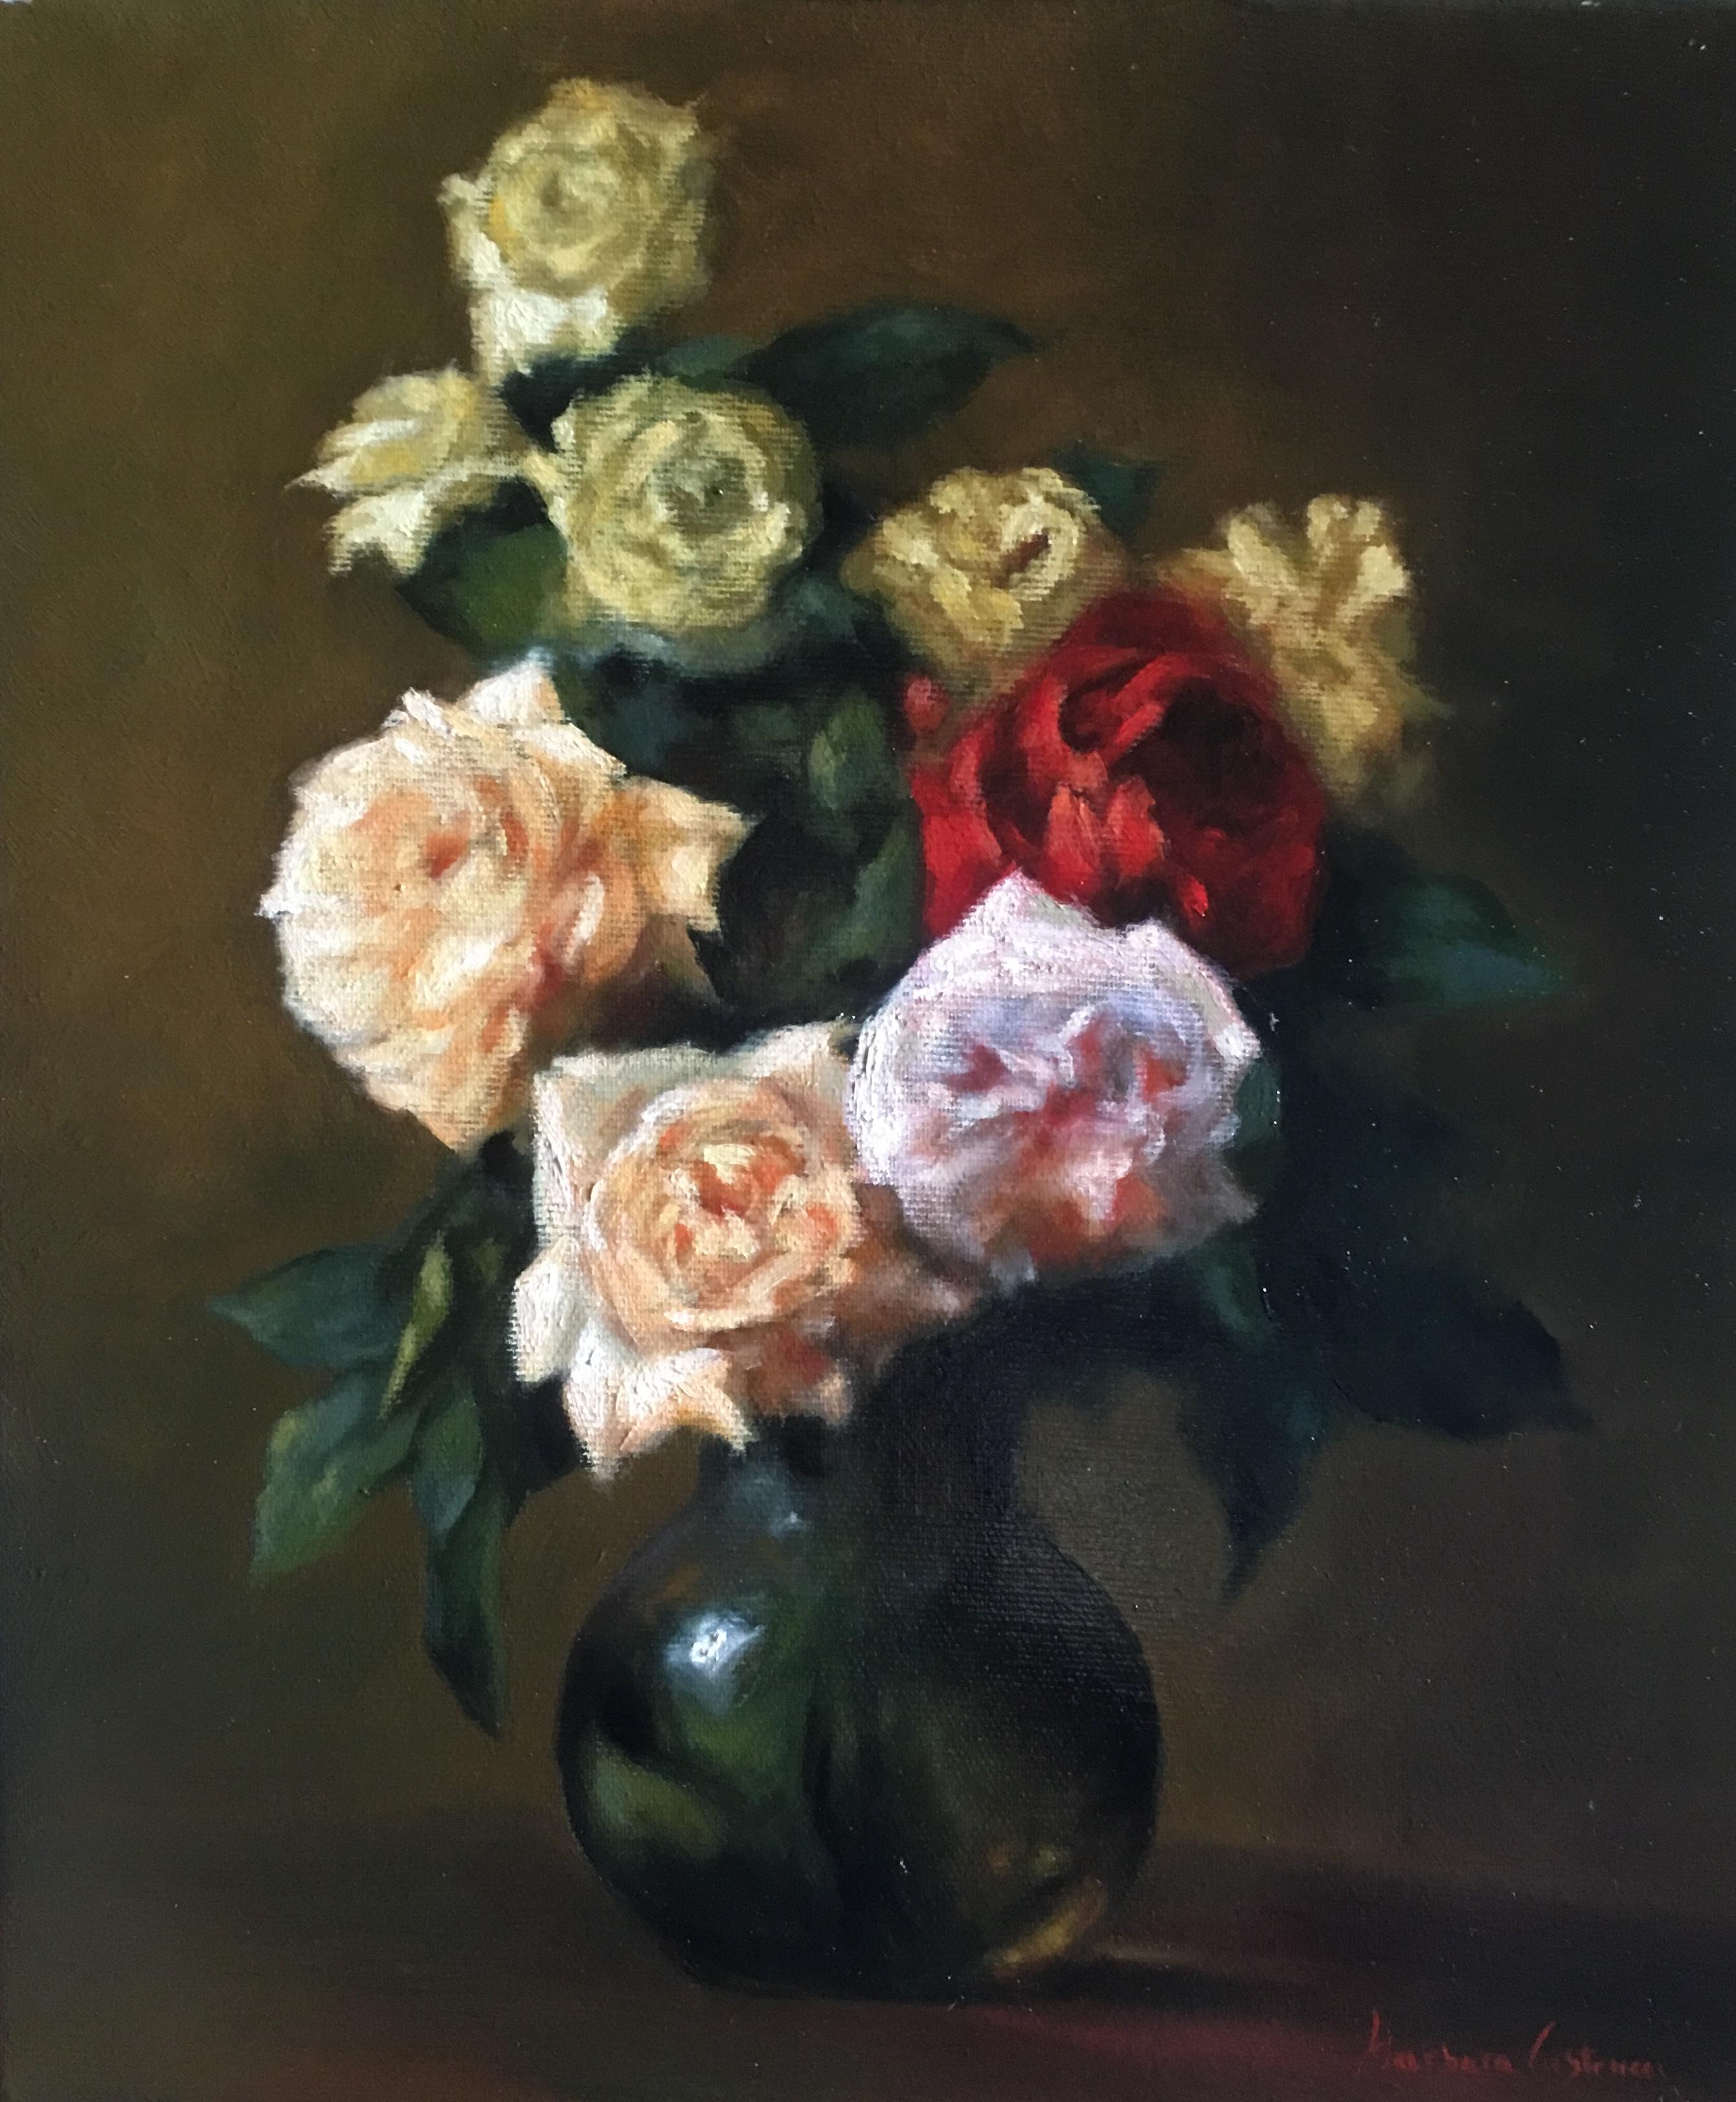 Still-Life Painting Barbara Castrucci - Nature morte de roses italiennes, artiste italien, Florence, réalisme, peinture à l'huile.